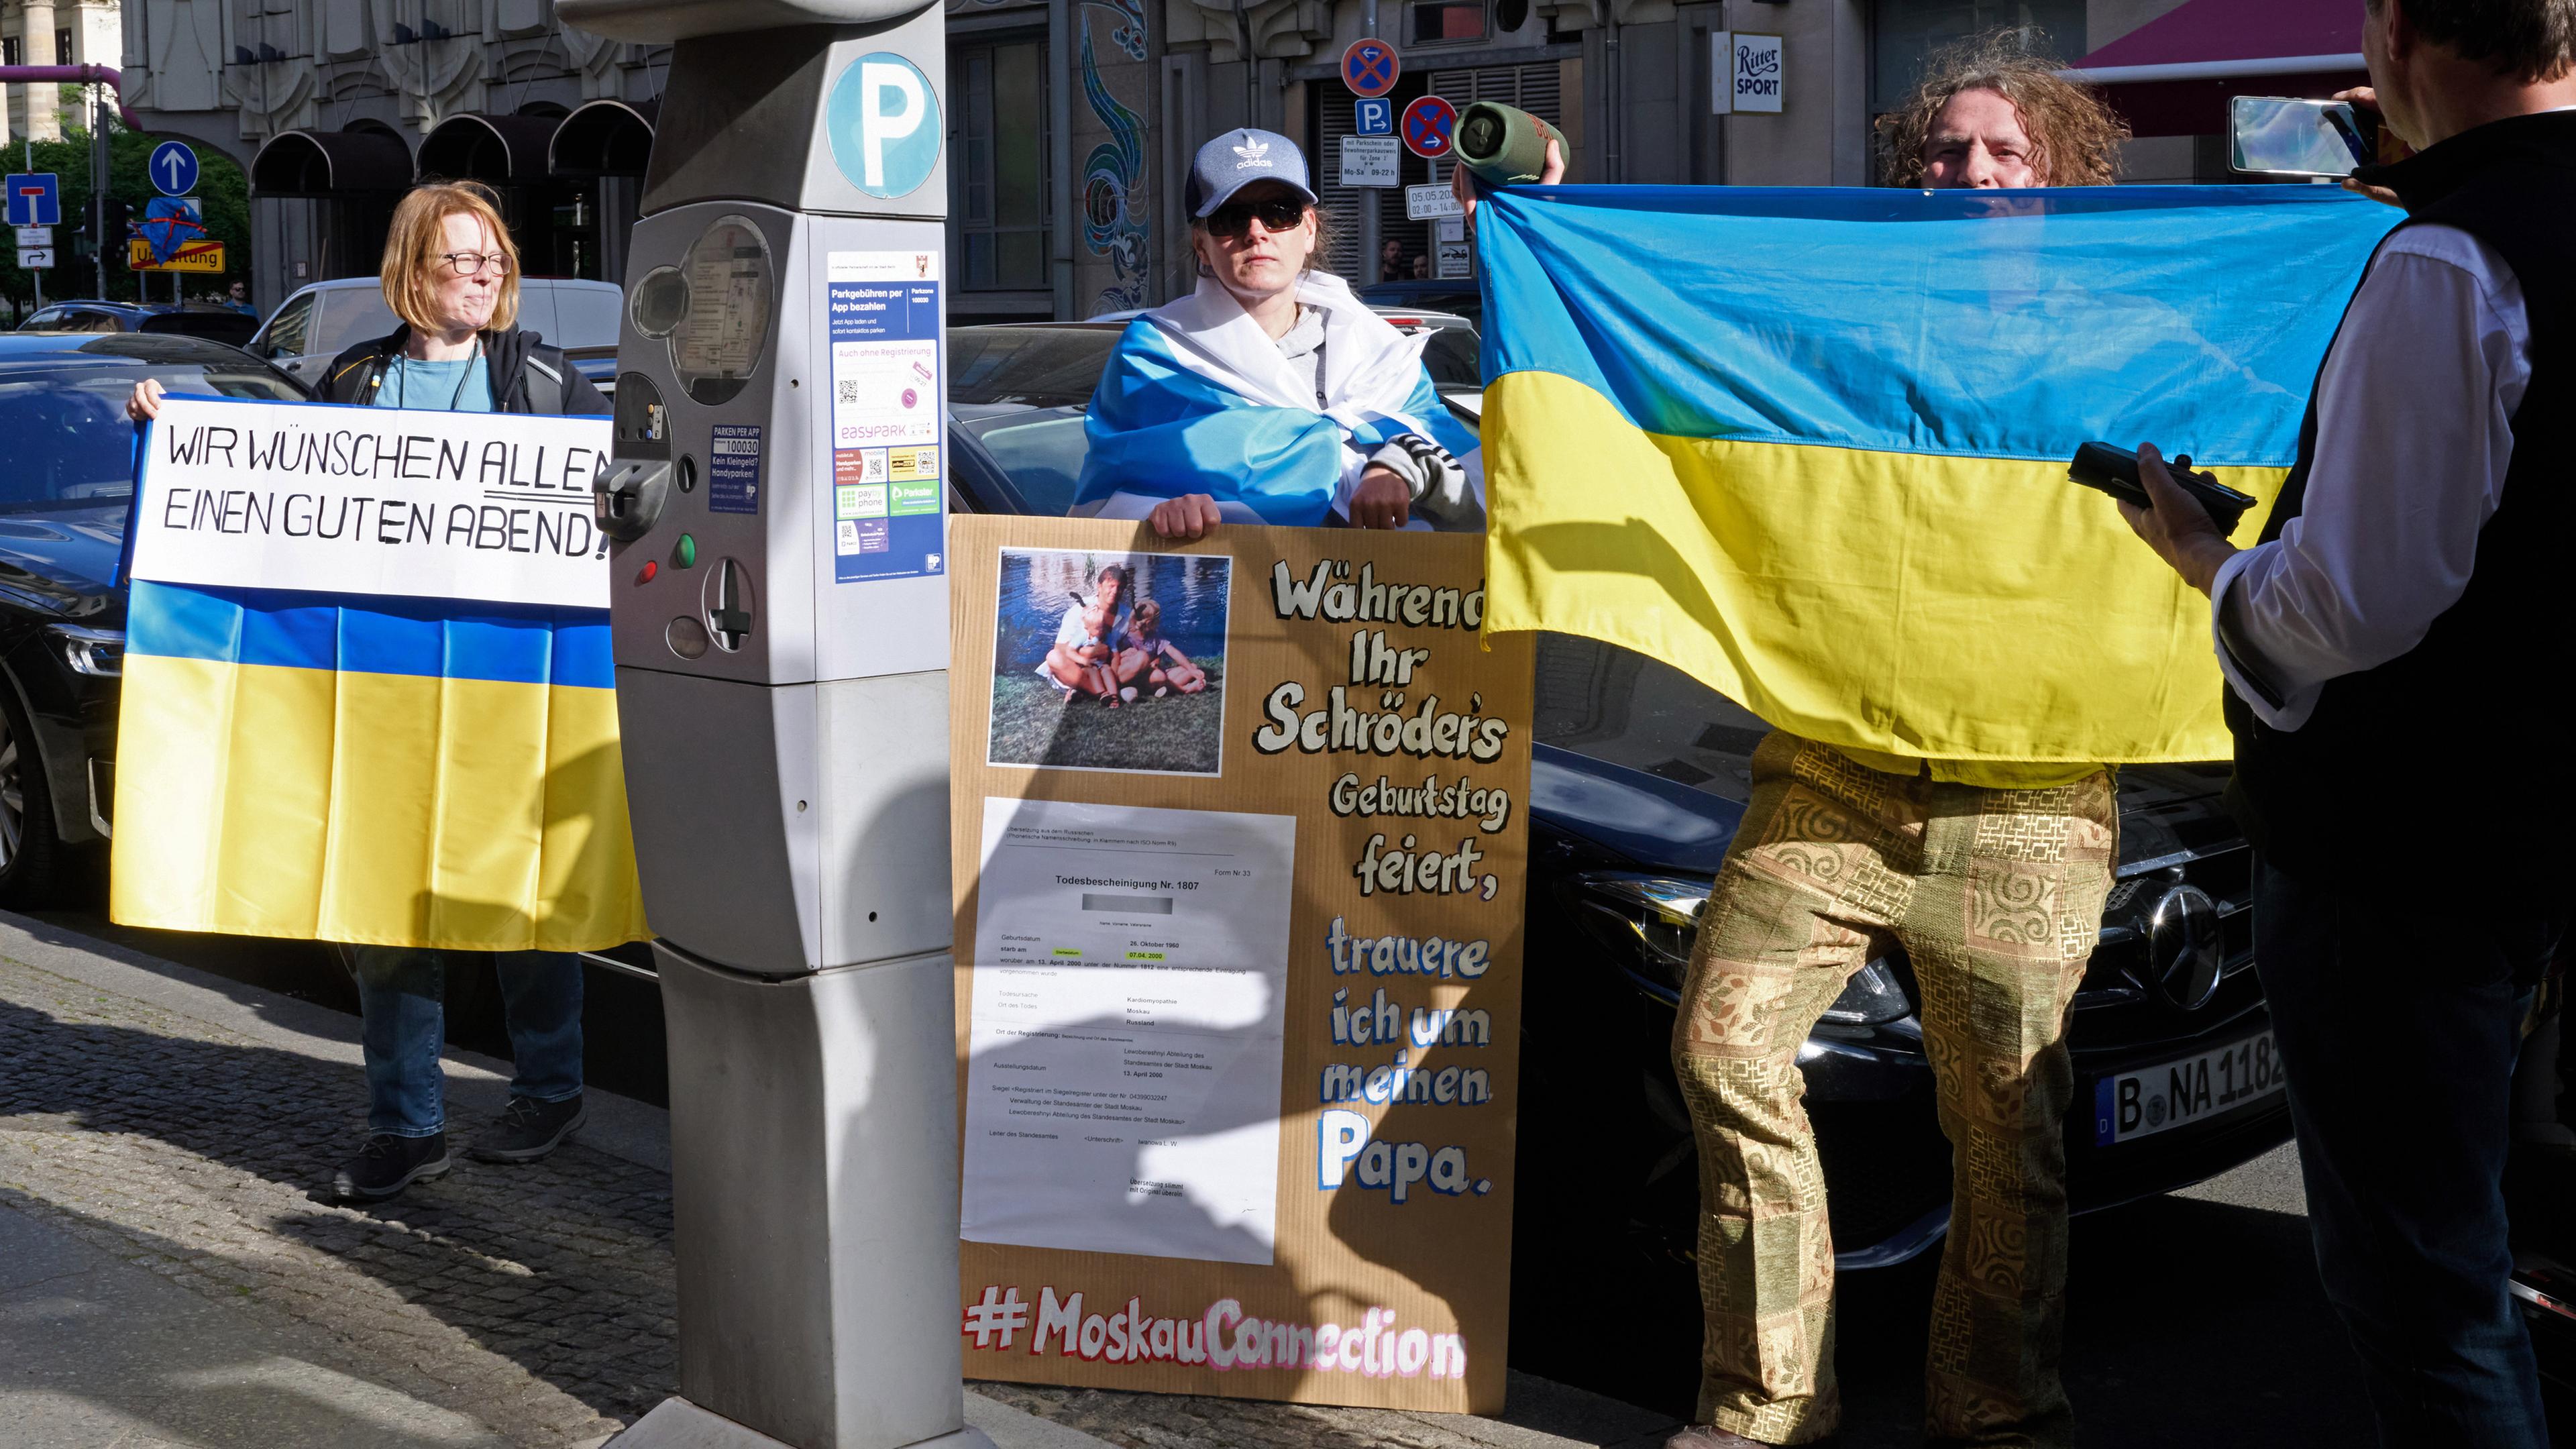 Demonstranten halten ukrainische Fahnen und ein Banner mit der Aufschrift "Wir wünschen allen einen guten Abend" vor dem Restaurant Borchardts, während Altkanzler Schröder dort seinen 80. Geburtstag feiert.